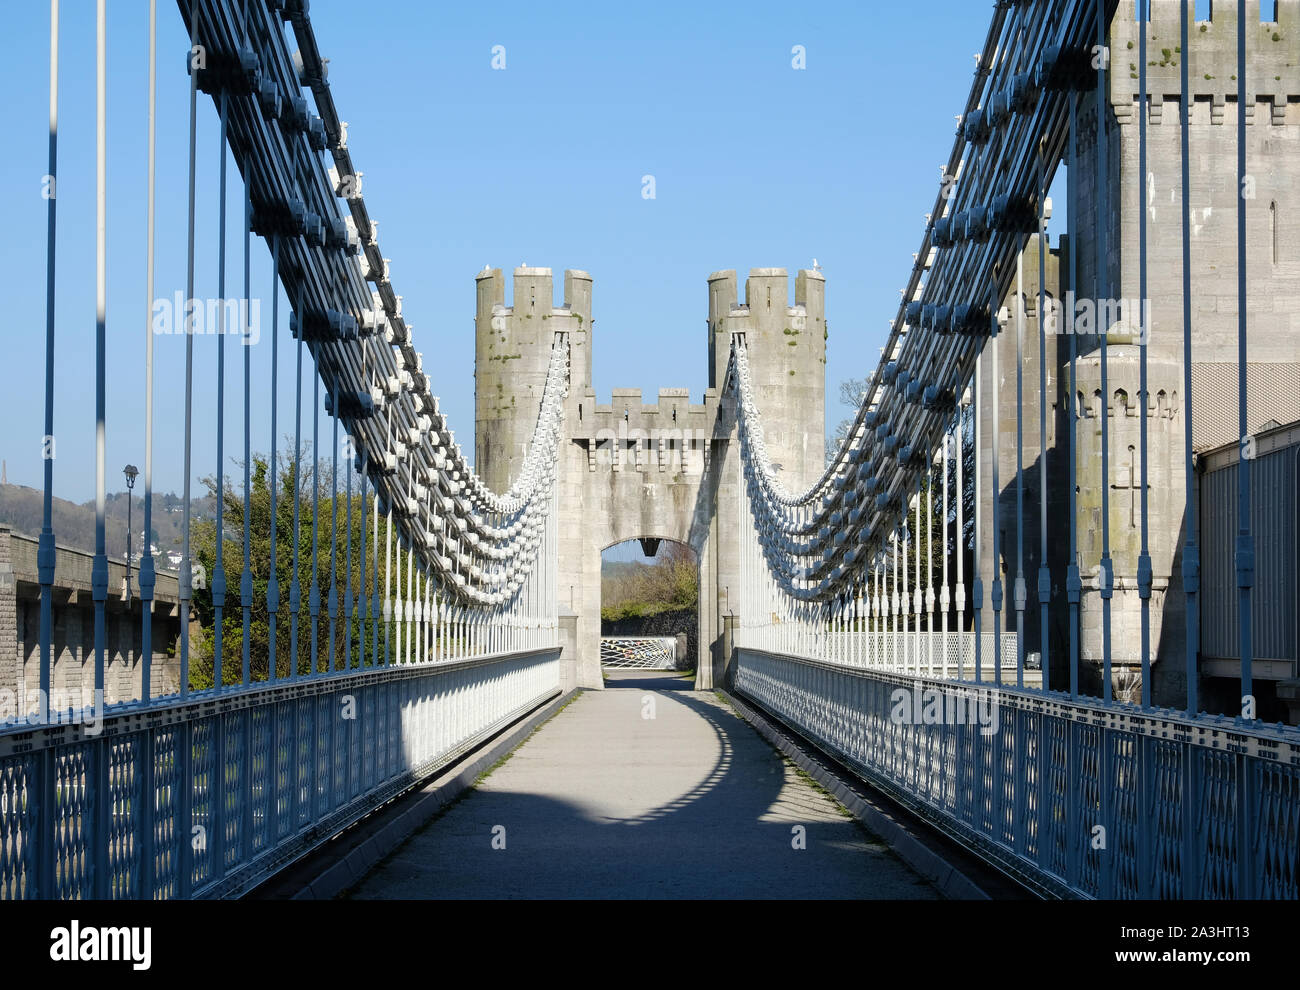 Conwy suspension bridge in North Wales Stock Photo